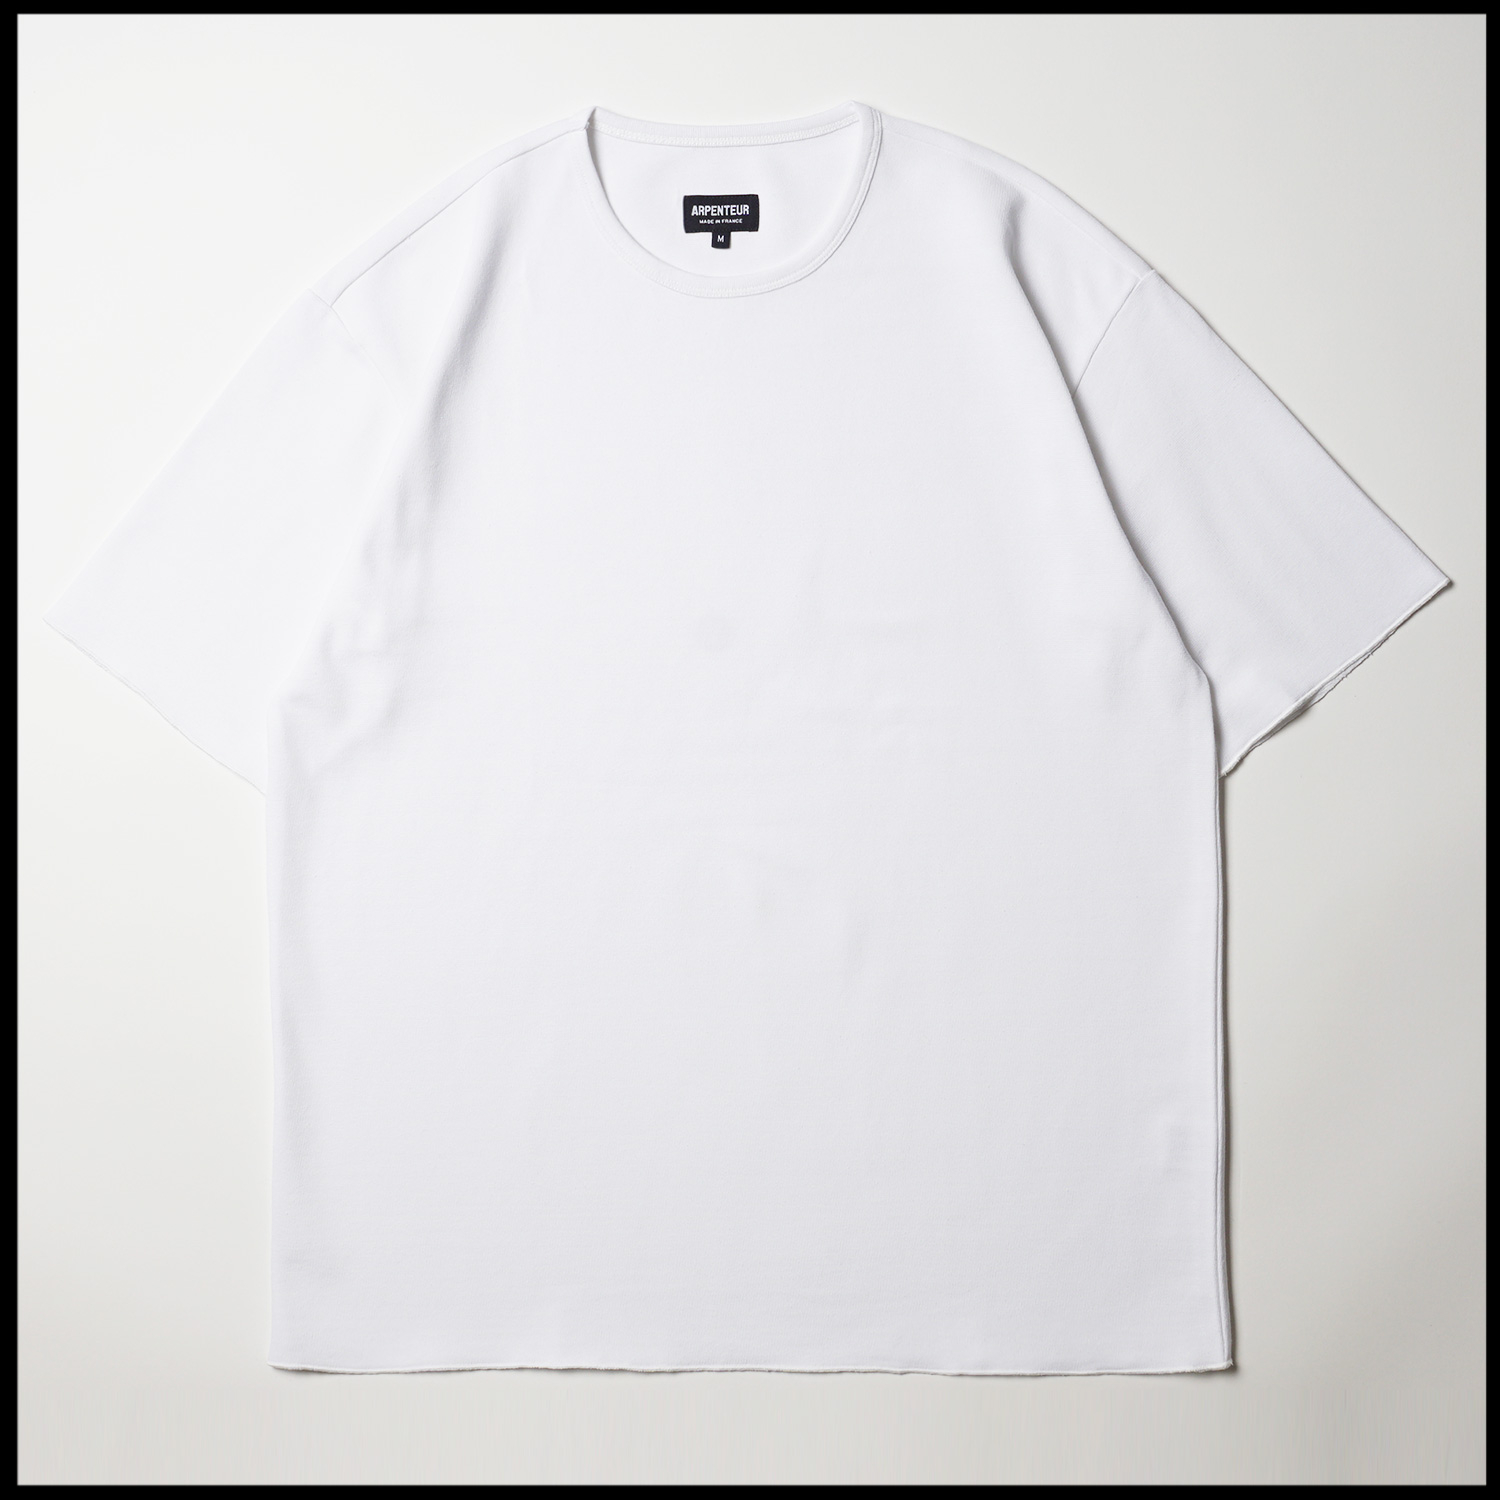 T-shirt Pontus coloris Blanc par Arpenteur